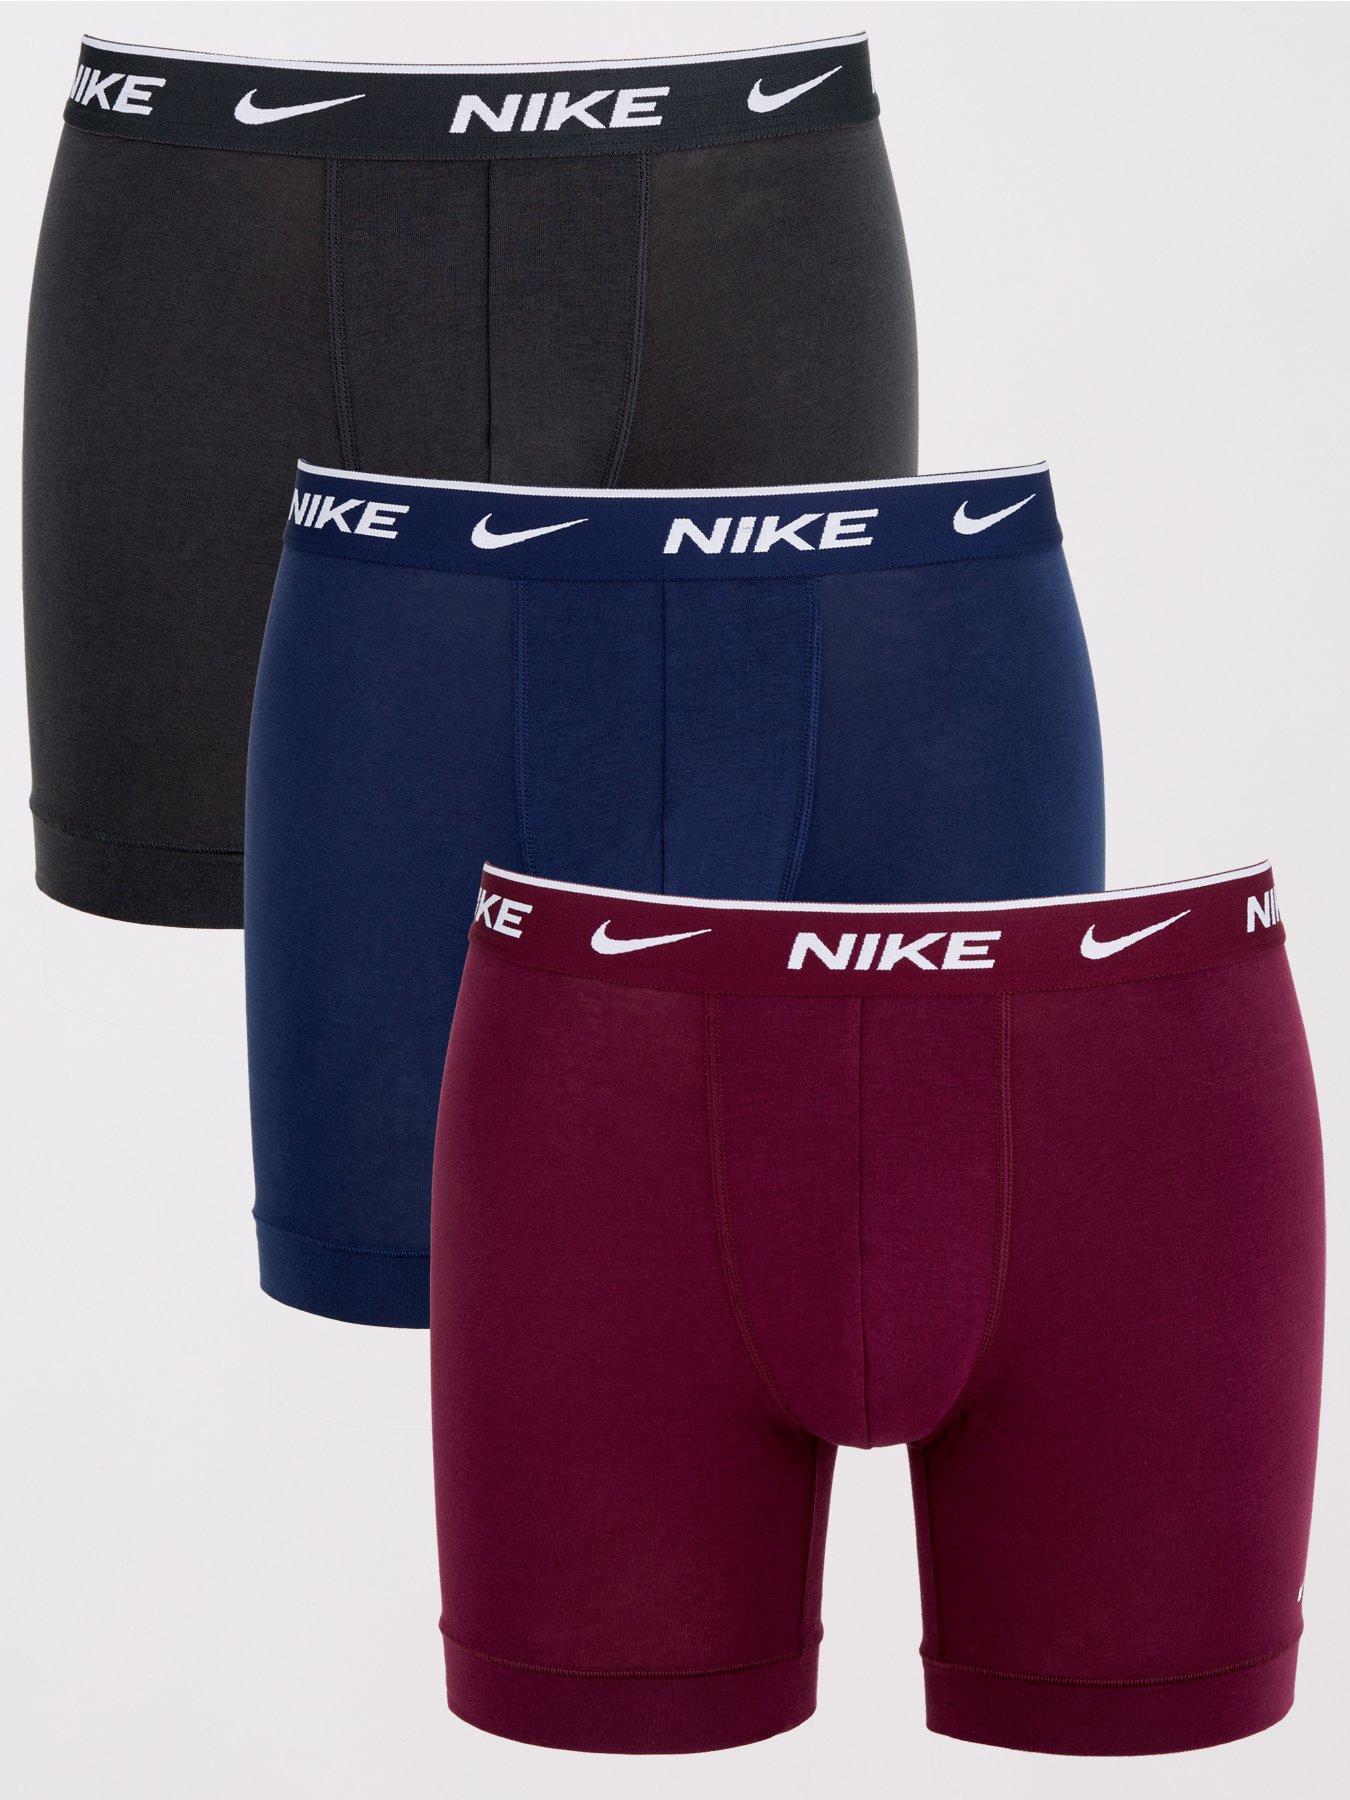 Nike Underwear Three Pack Everyday Cotton Stretch Boxer Brief - Navy